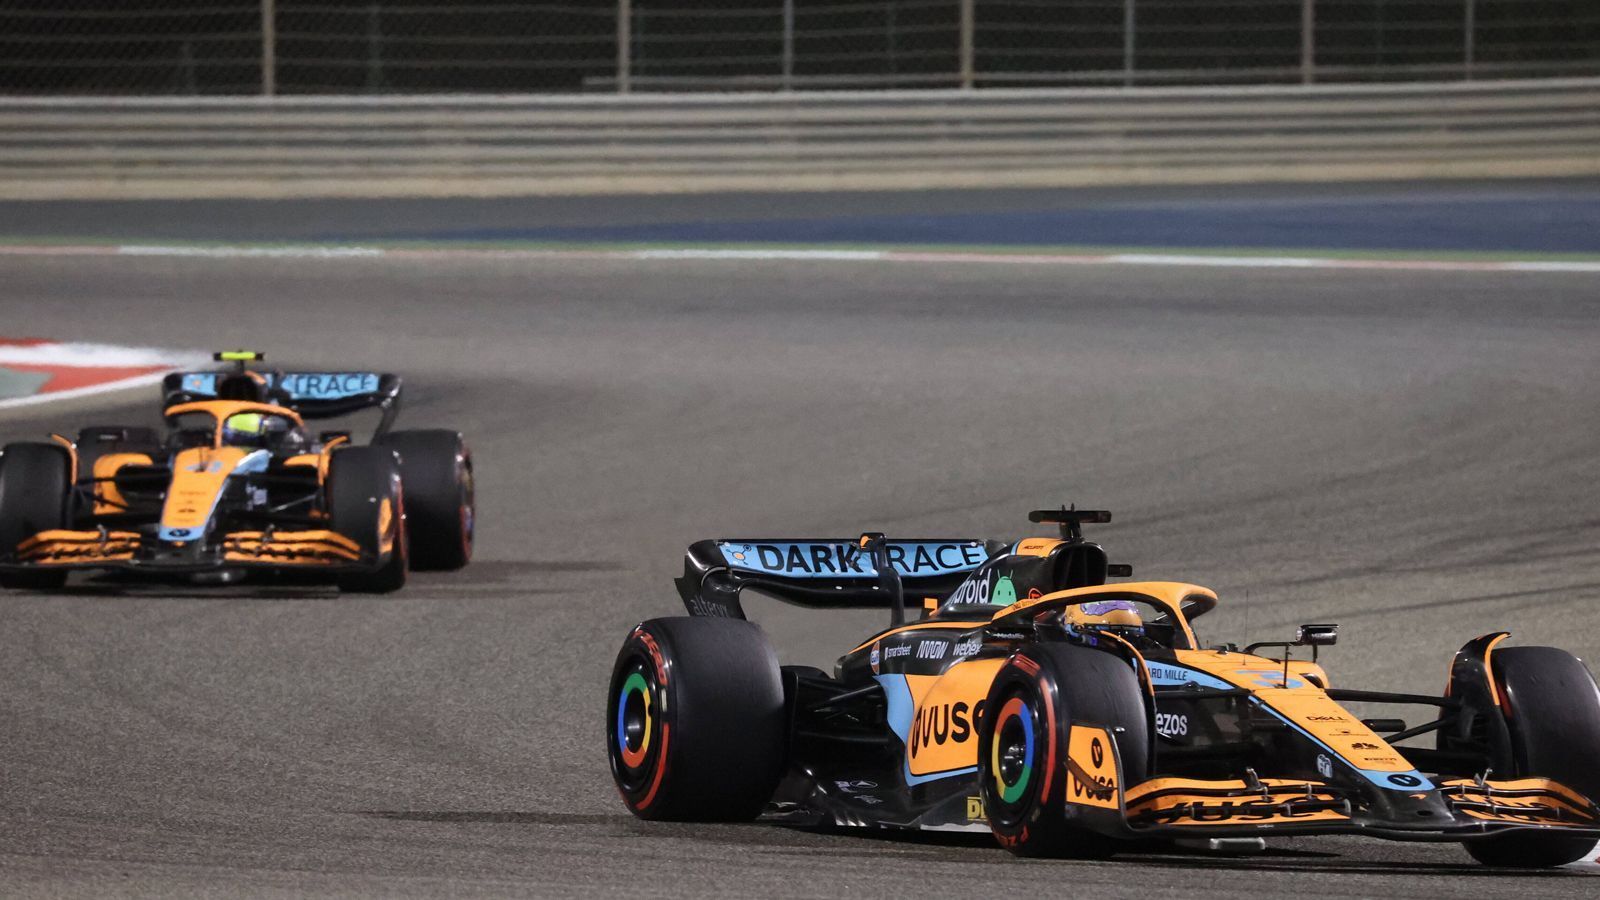 
                <strong>Verlierer: McLaren</strong><br>
                Für McLaren geriet der Auftakt zu einem Debakel. Lando Norris und Daniel Ricciardo waren zu keinem Zeitpunkt nicht nur nicht konkurrenzfähig, sie waren schlichtweg chancenlos. Die Plätze 14 (Ricciardo) und 15 (Norris) bei 17 Autos, die ins Ziel kamen, sprechen Bände. Der große Rückstand im Qualifying war überraschend, trotzdem hofft man beim Traditionsrennstall, dass Bahrain die Schwächen des Renners besonders schonungslos aufgedeckt hat und es in Saudi-Arabien schon wieder besser läuft.
              